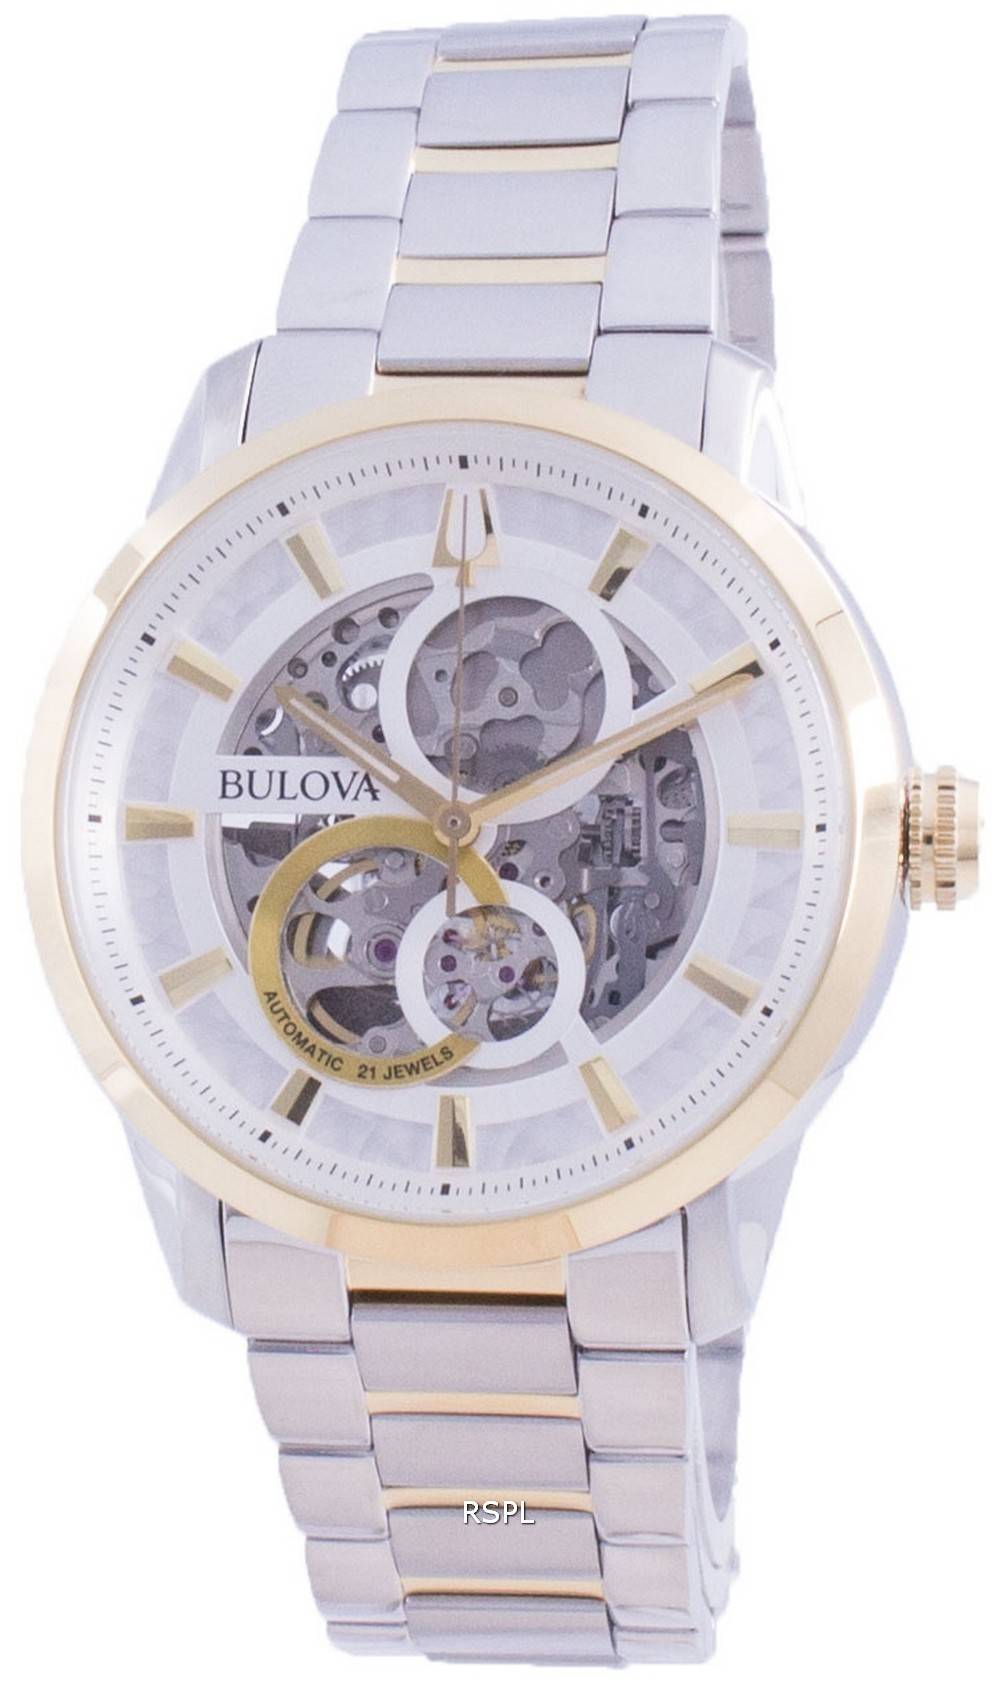 17,760円Bulova ブローバ 自動巻き腕時計 98A214